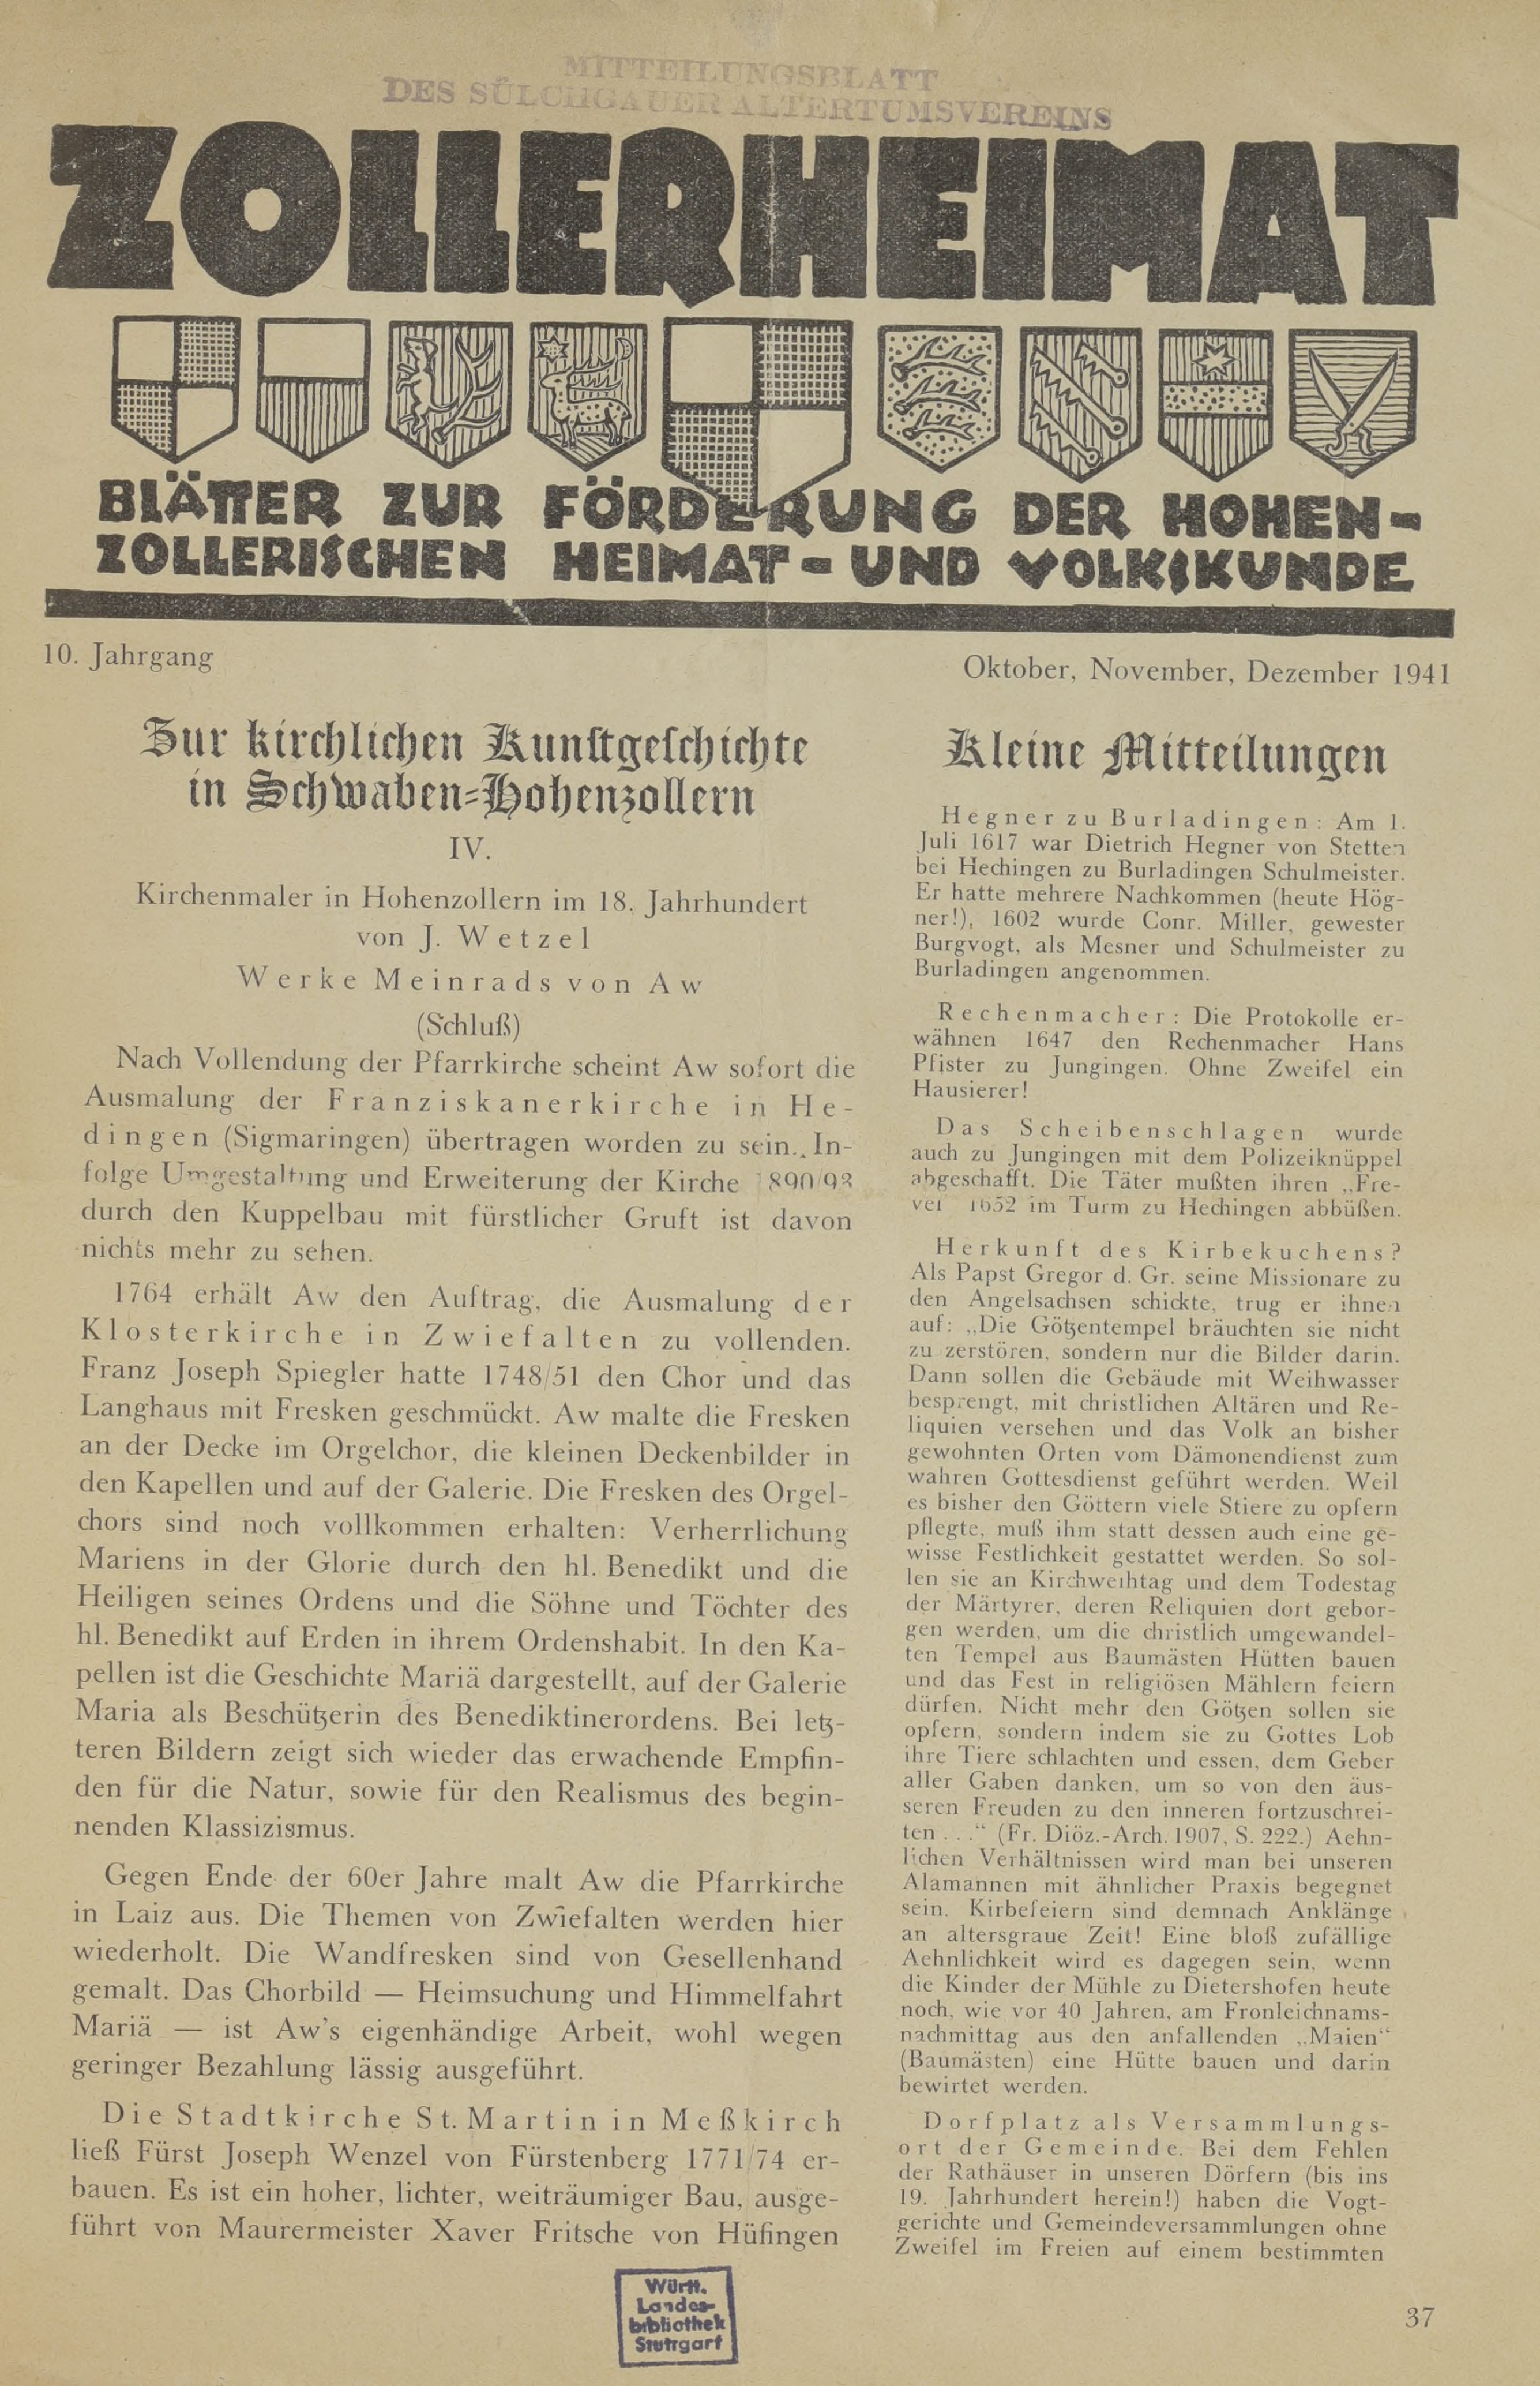                     Ansehen Bd. 10 Nr. 4 (1941): Zollerheimat
                